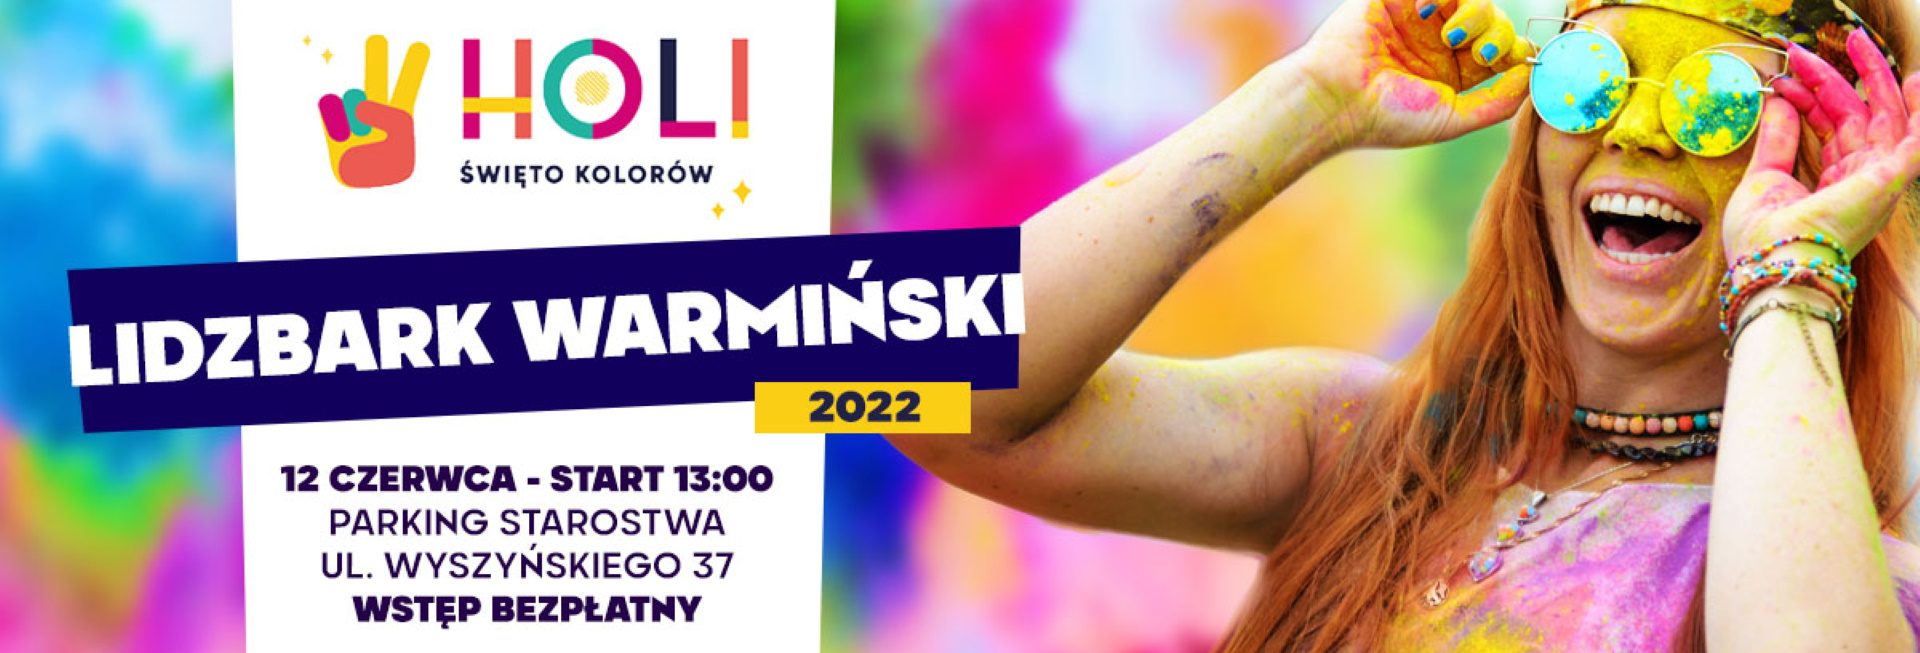 Plakat graficzny zapraszający do Lidzbarka Warmińskiego na Holi Święto Kolorów w Lidzbarku Warmińskim 2022.